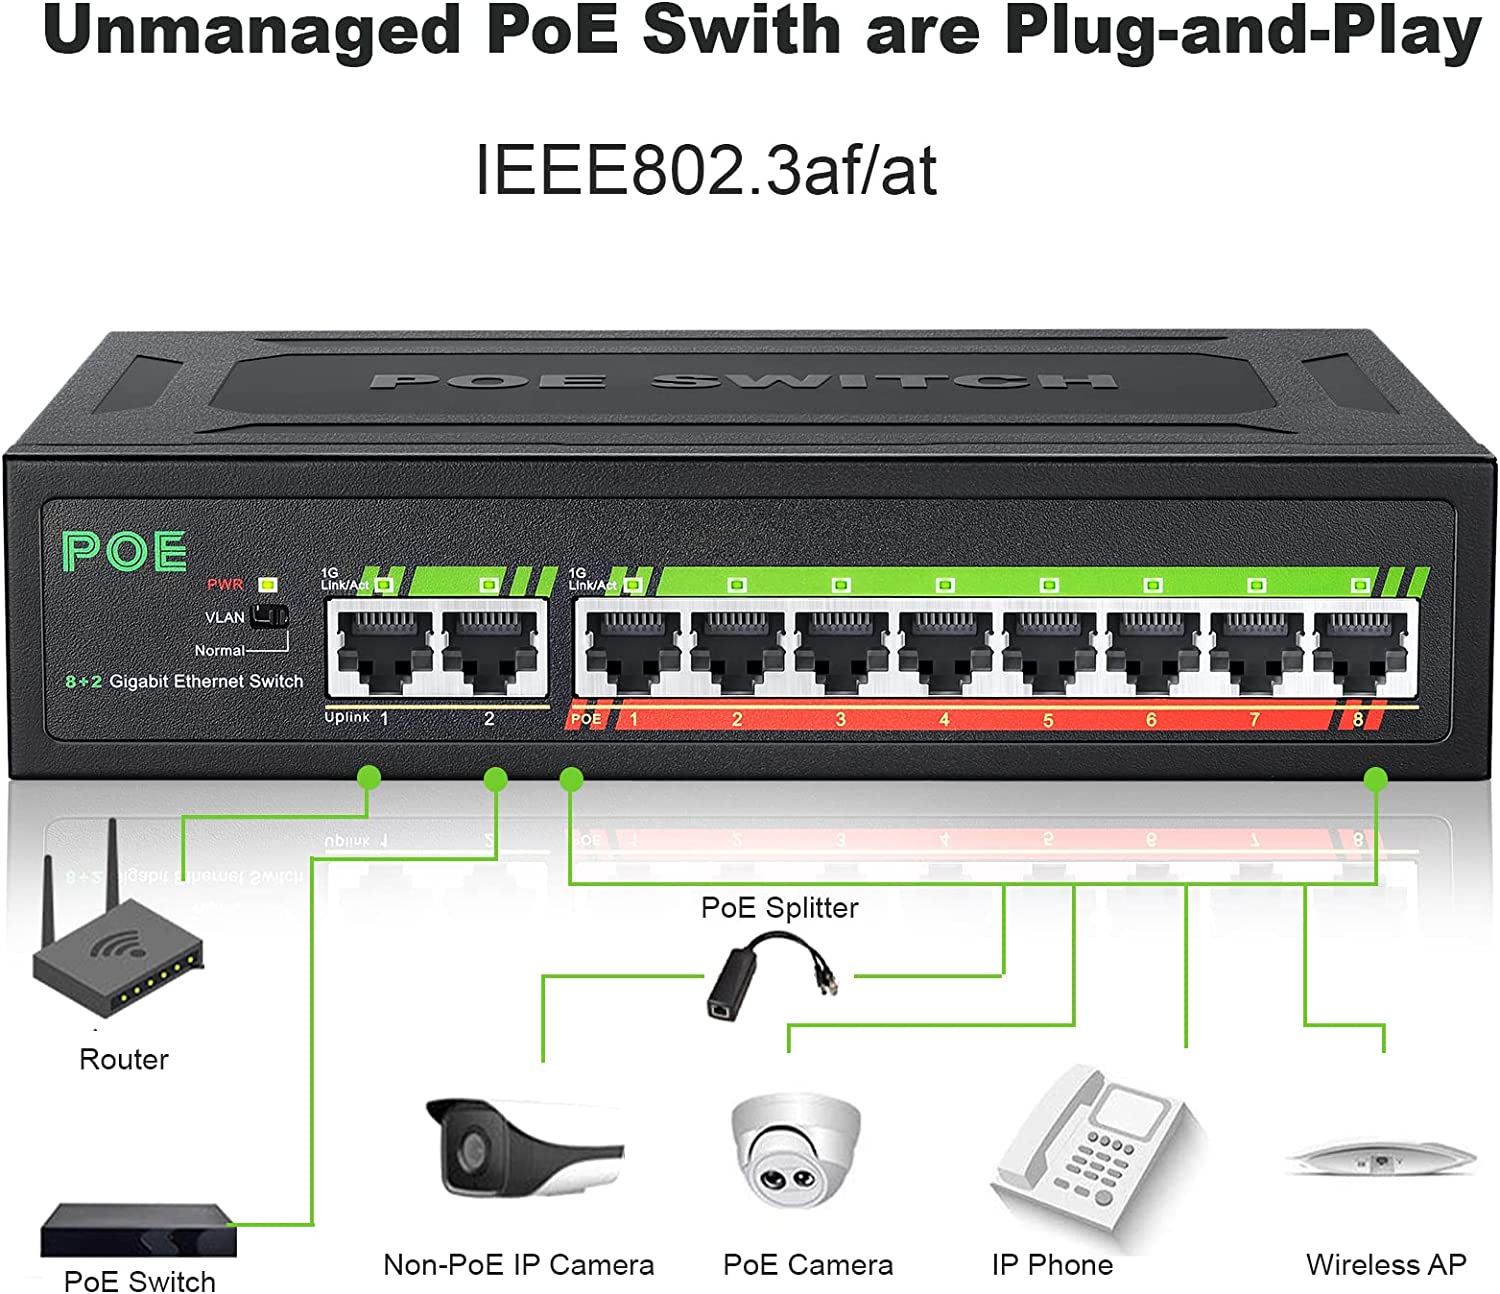 HF-ES48OE: 8 Port Gigabit PoE Switch with 2 Gigabit Uplink, 8 10/100/1000Mbps PoE+ Ports @120W, 802.3af/802.3at Compliant - Click Image to Close